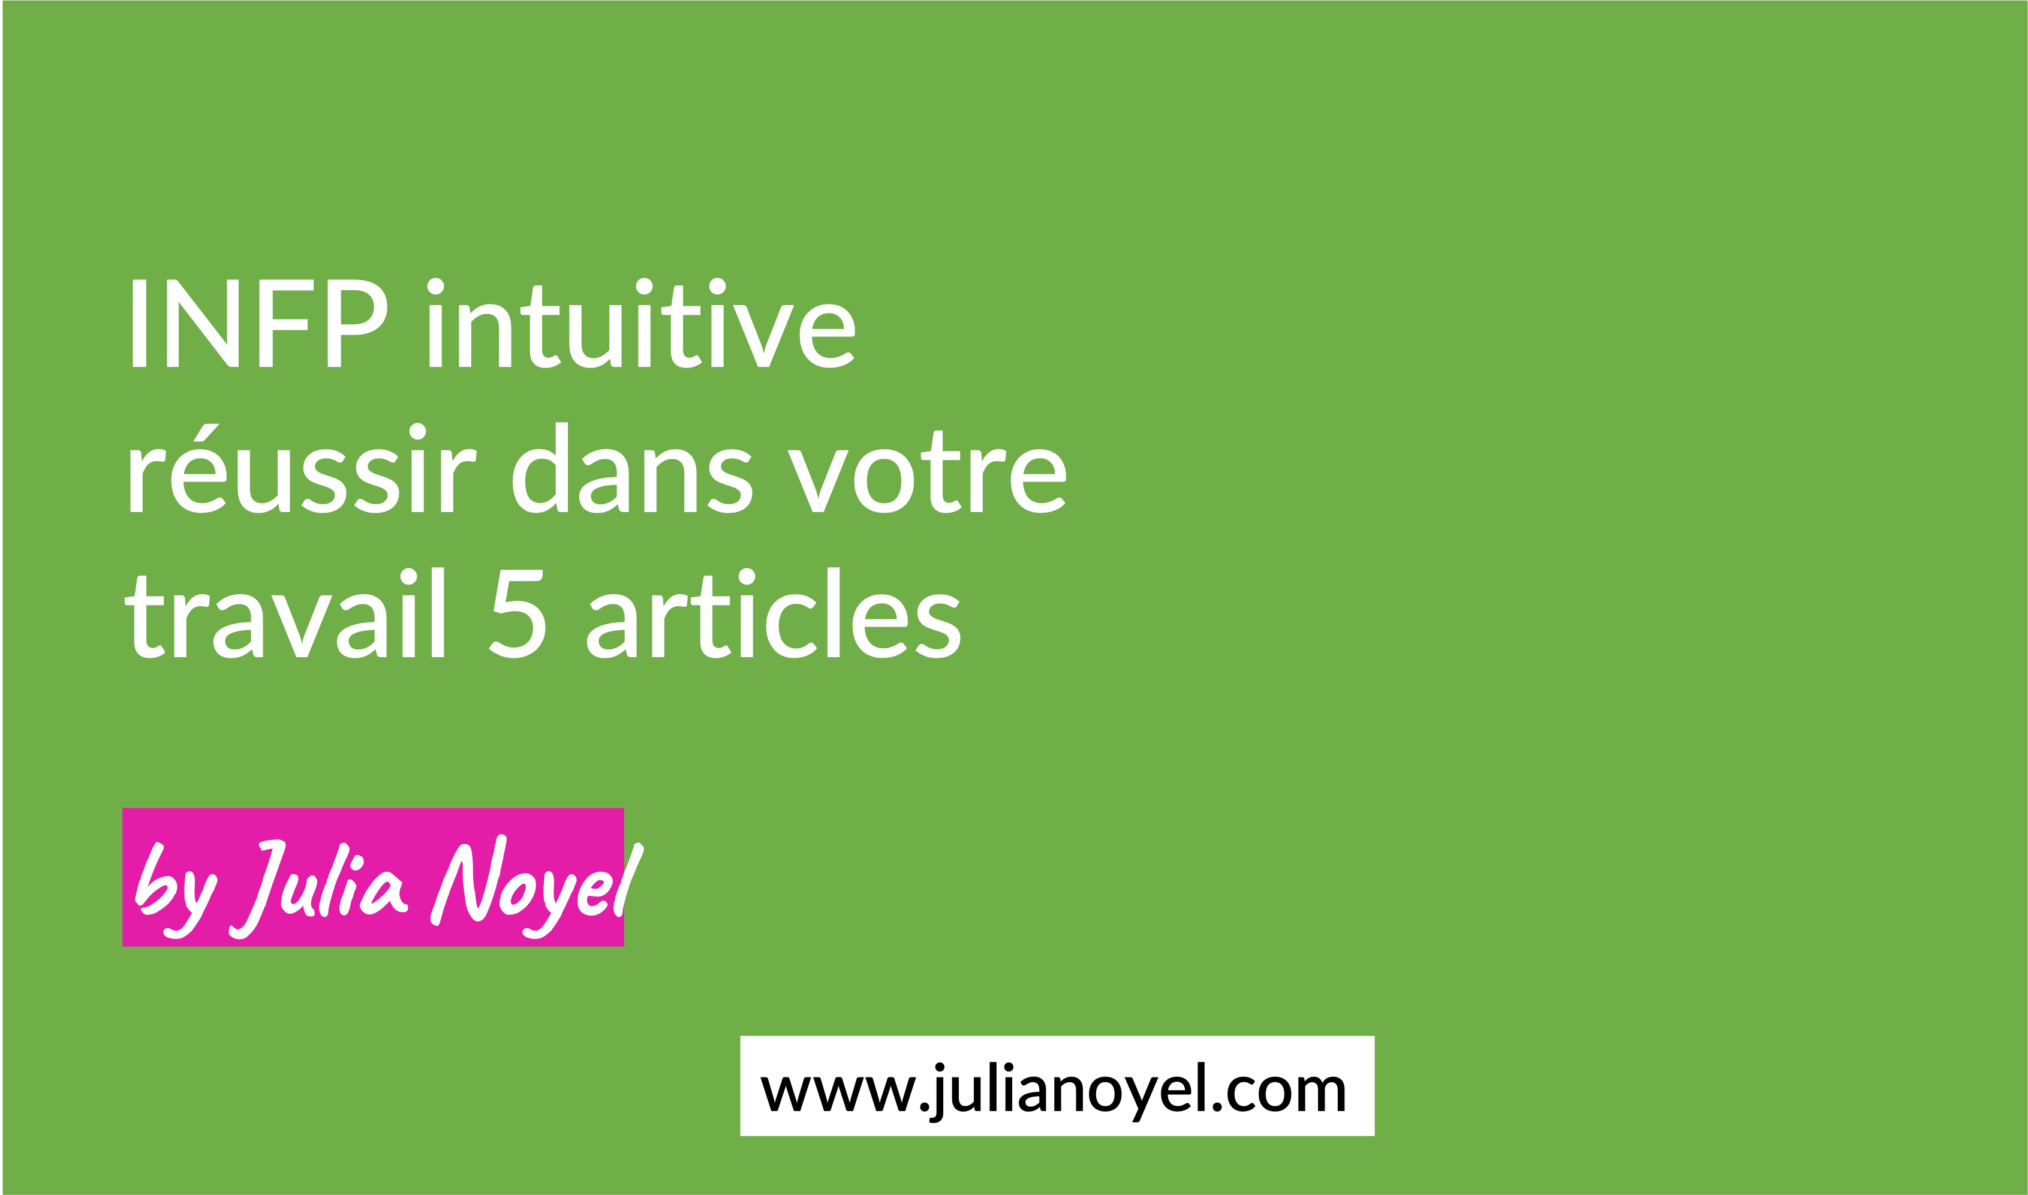 INFP intuitive réussir dans votre travail 5 articles by Julia Noyel